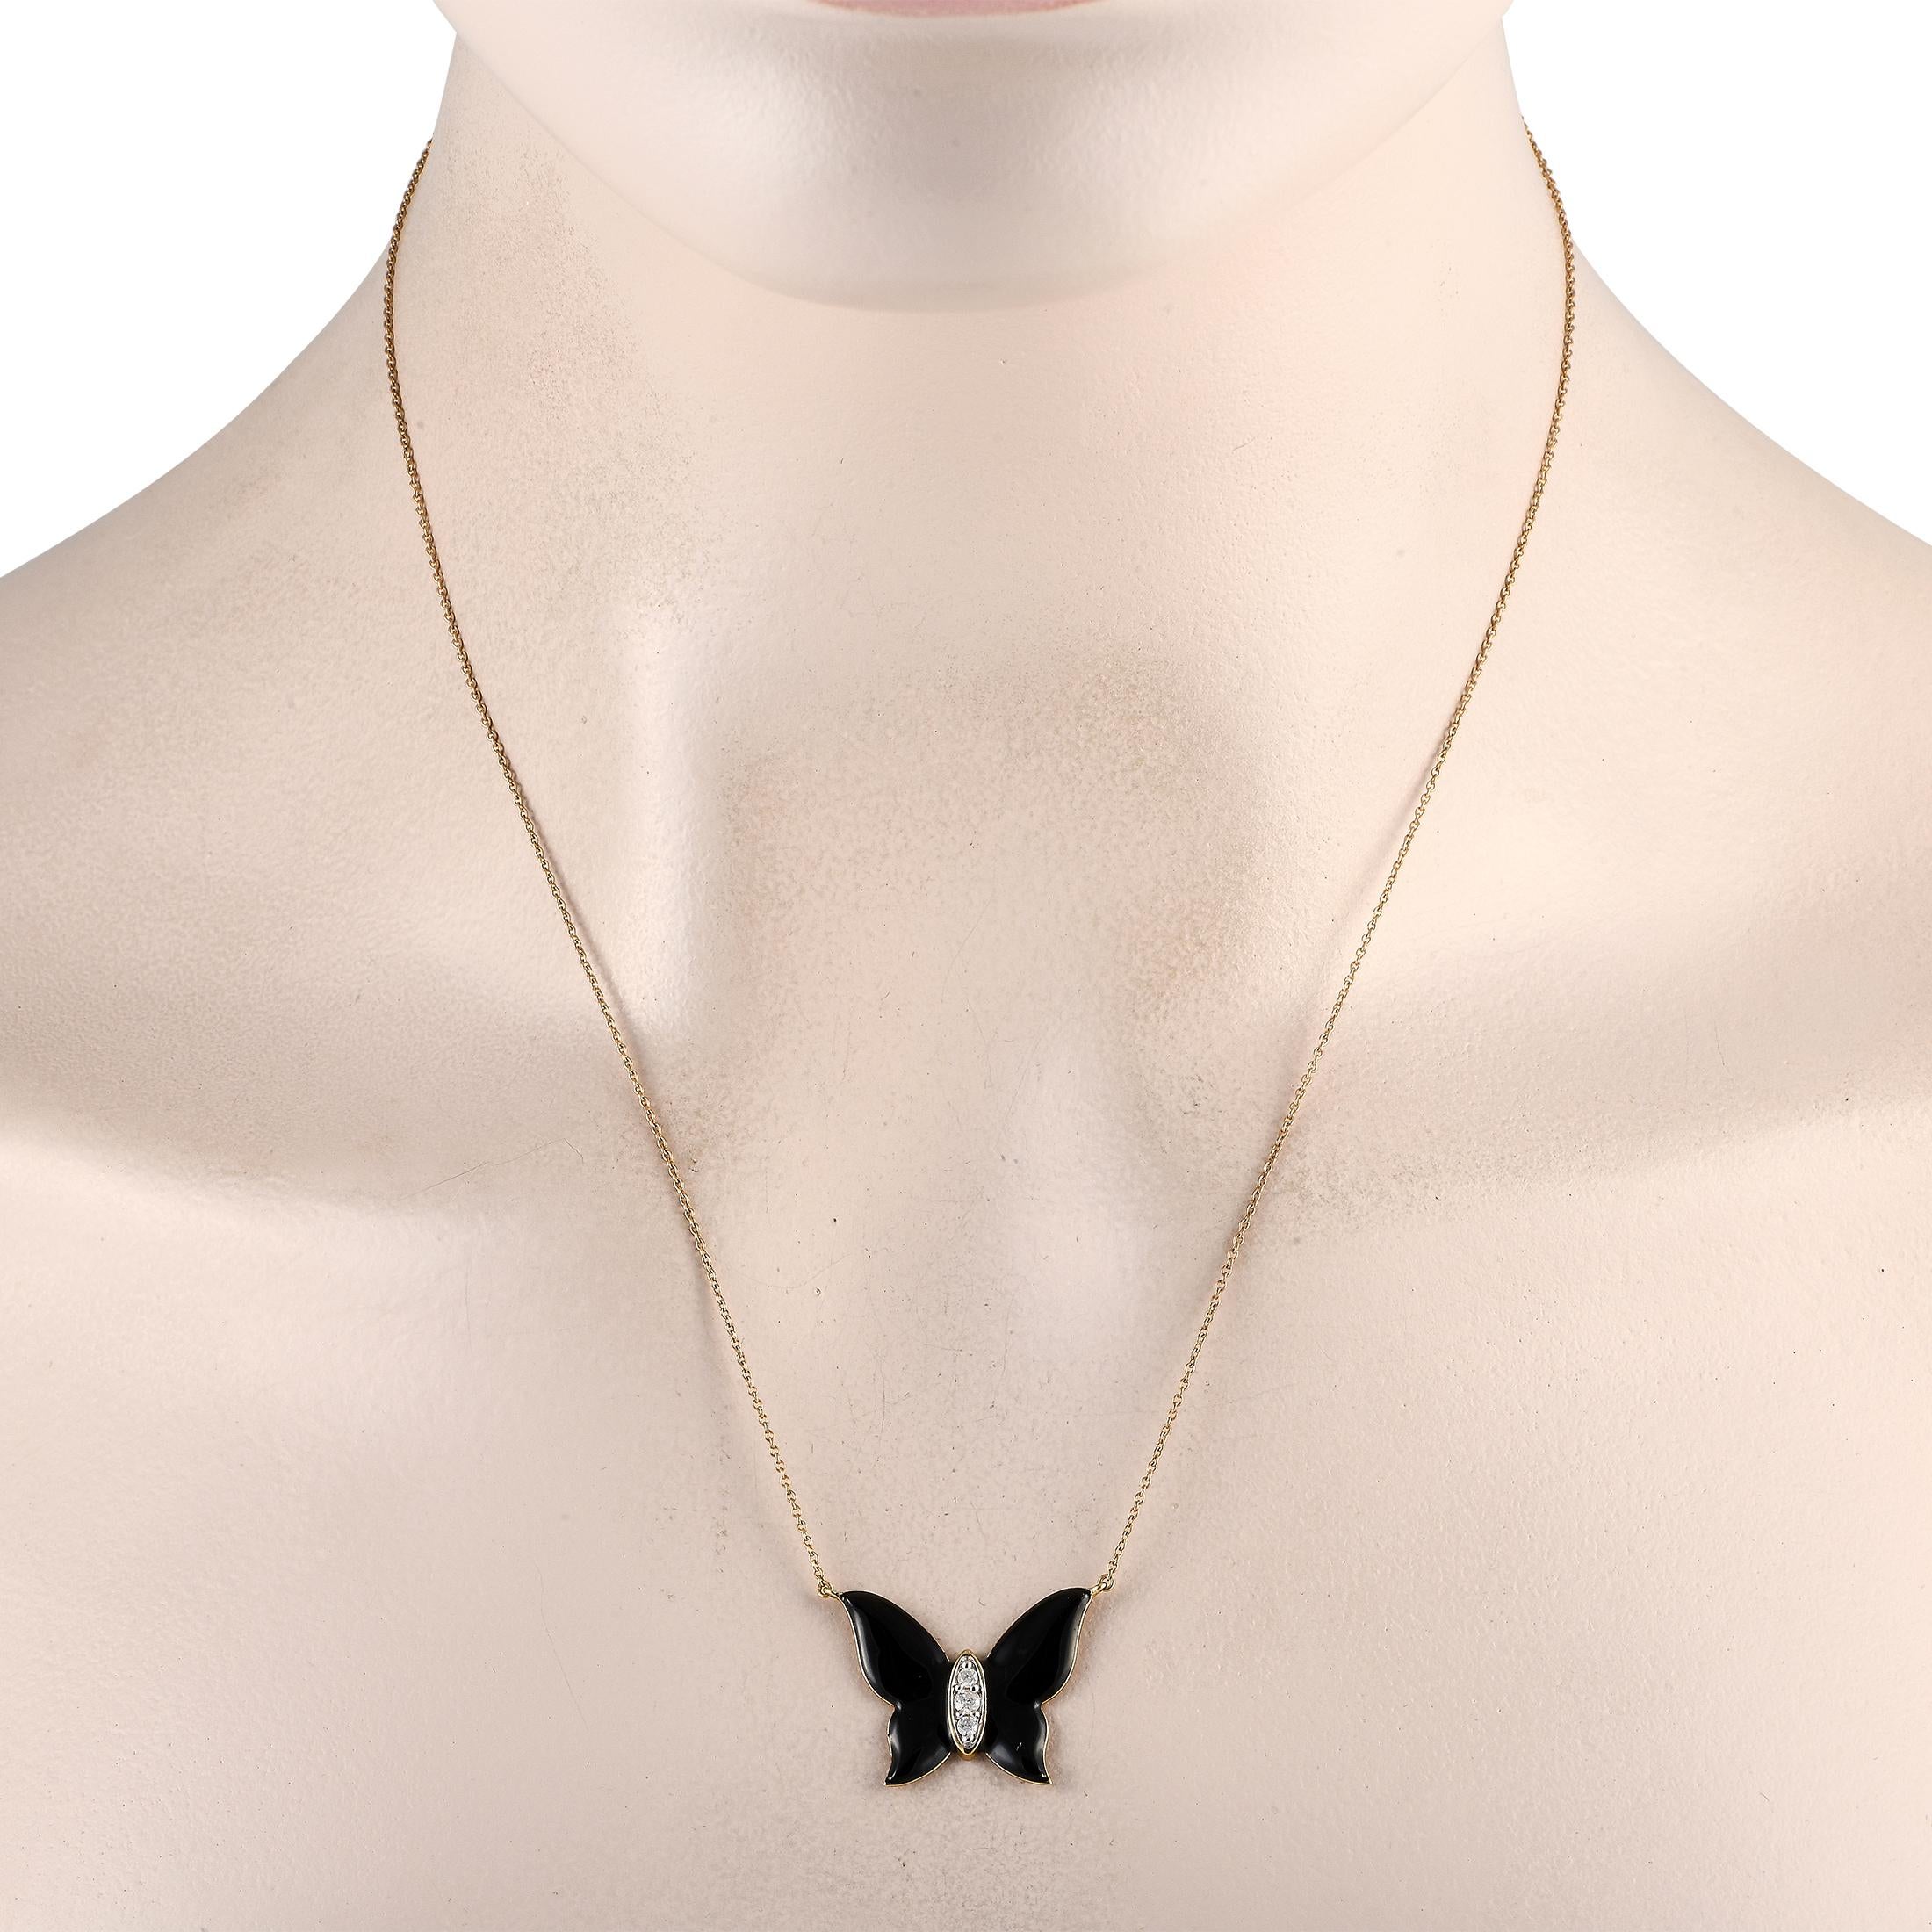 Empreint de mystère et de sophistication, ce collier papillon en onyx peut compléter élégamment n'importe quelle tenue. Pour un éclat saisissant, le centre du pendentif papillon est orné d'une lunette marquise remplie d'un trio de diamants ronds.Ce